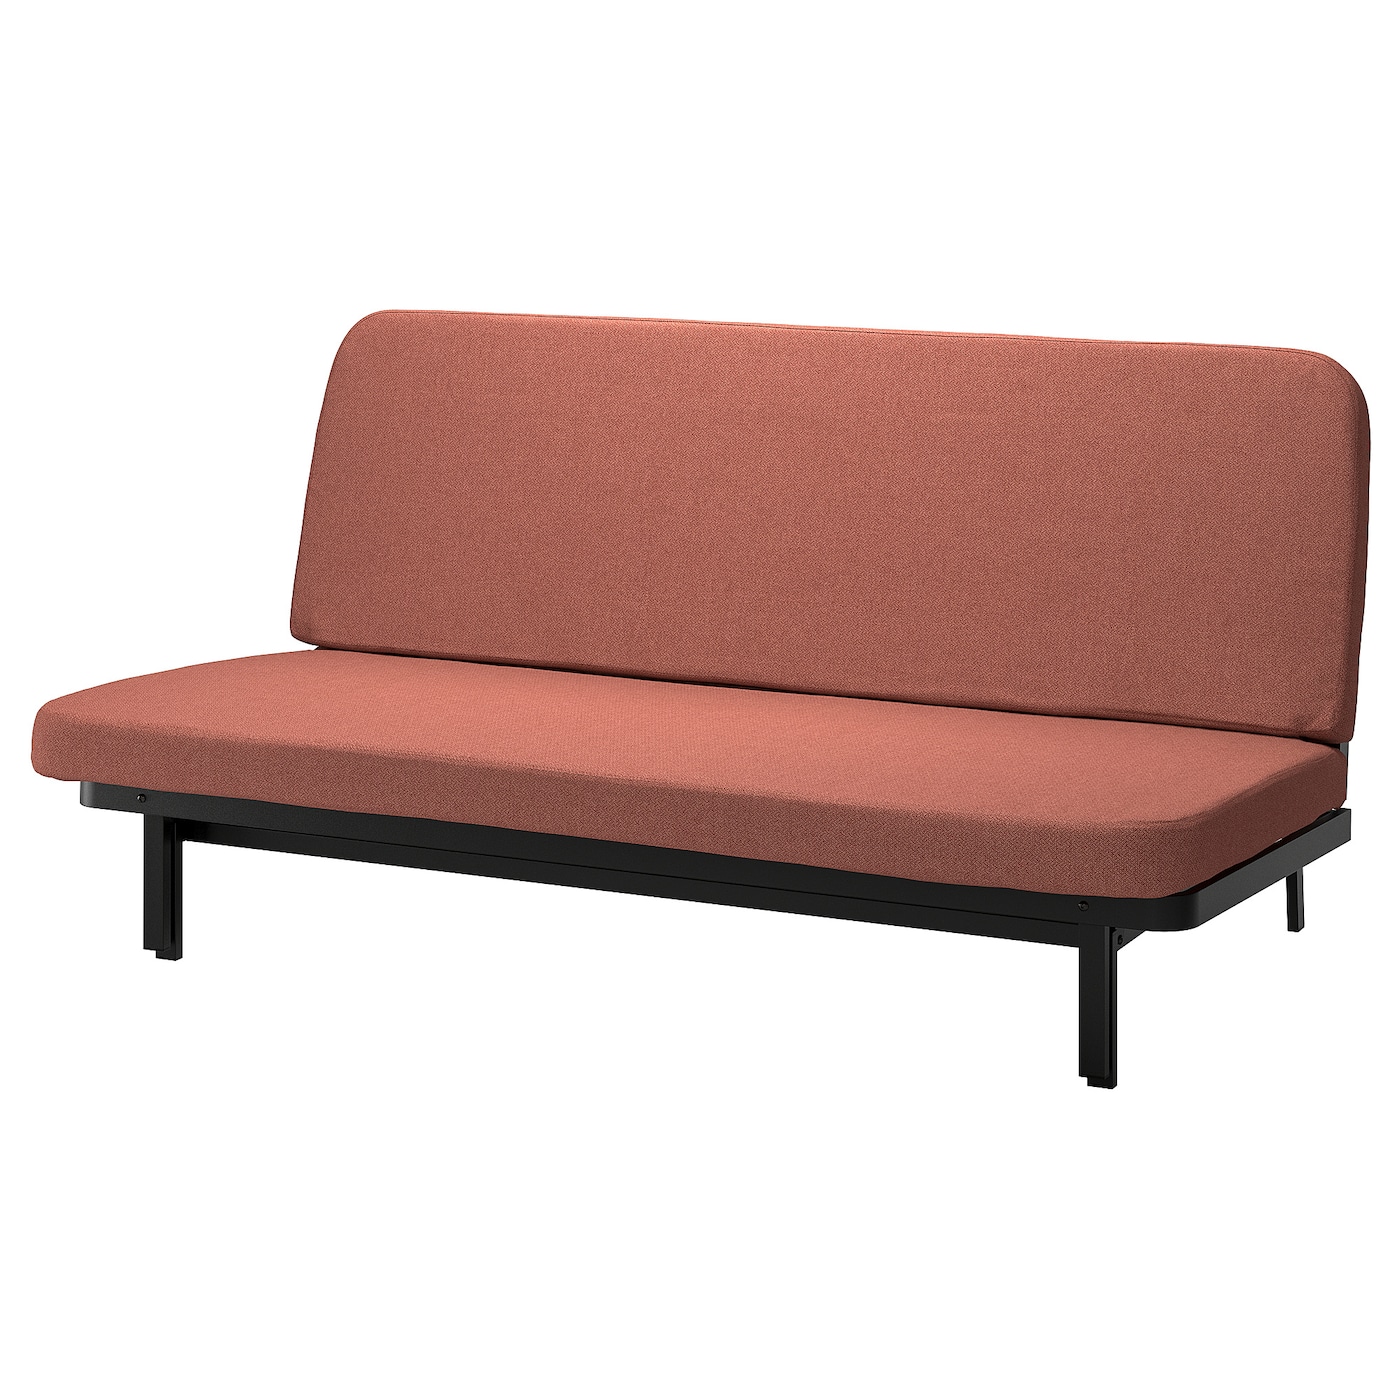 мультяшный матрас ленивый диван кровать подходит для детей татами маты креативный маленький диван кровать стул современная мебель для NYHAMN 3-местный диван-кровать, поролоновый матрас в комплекте/Скартофта красный/коричневый IKEA